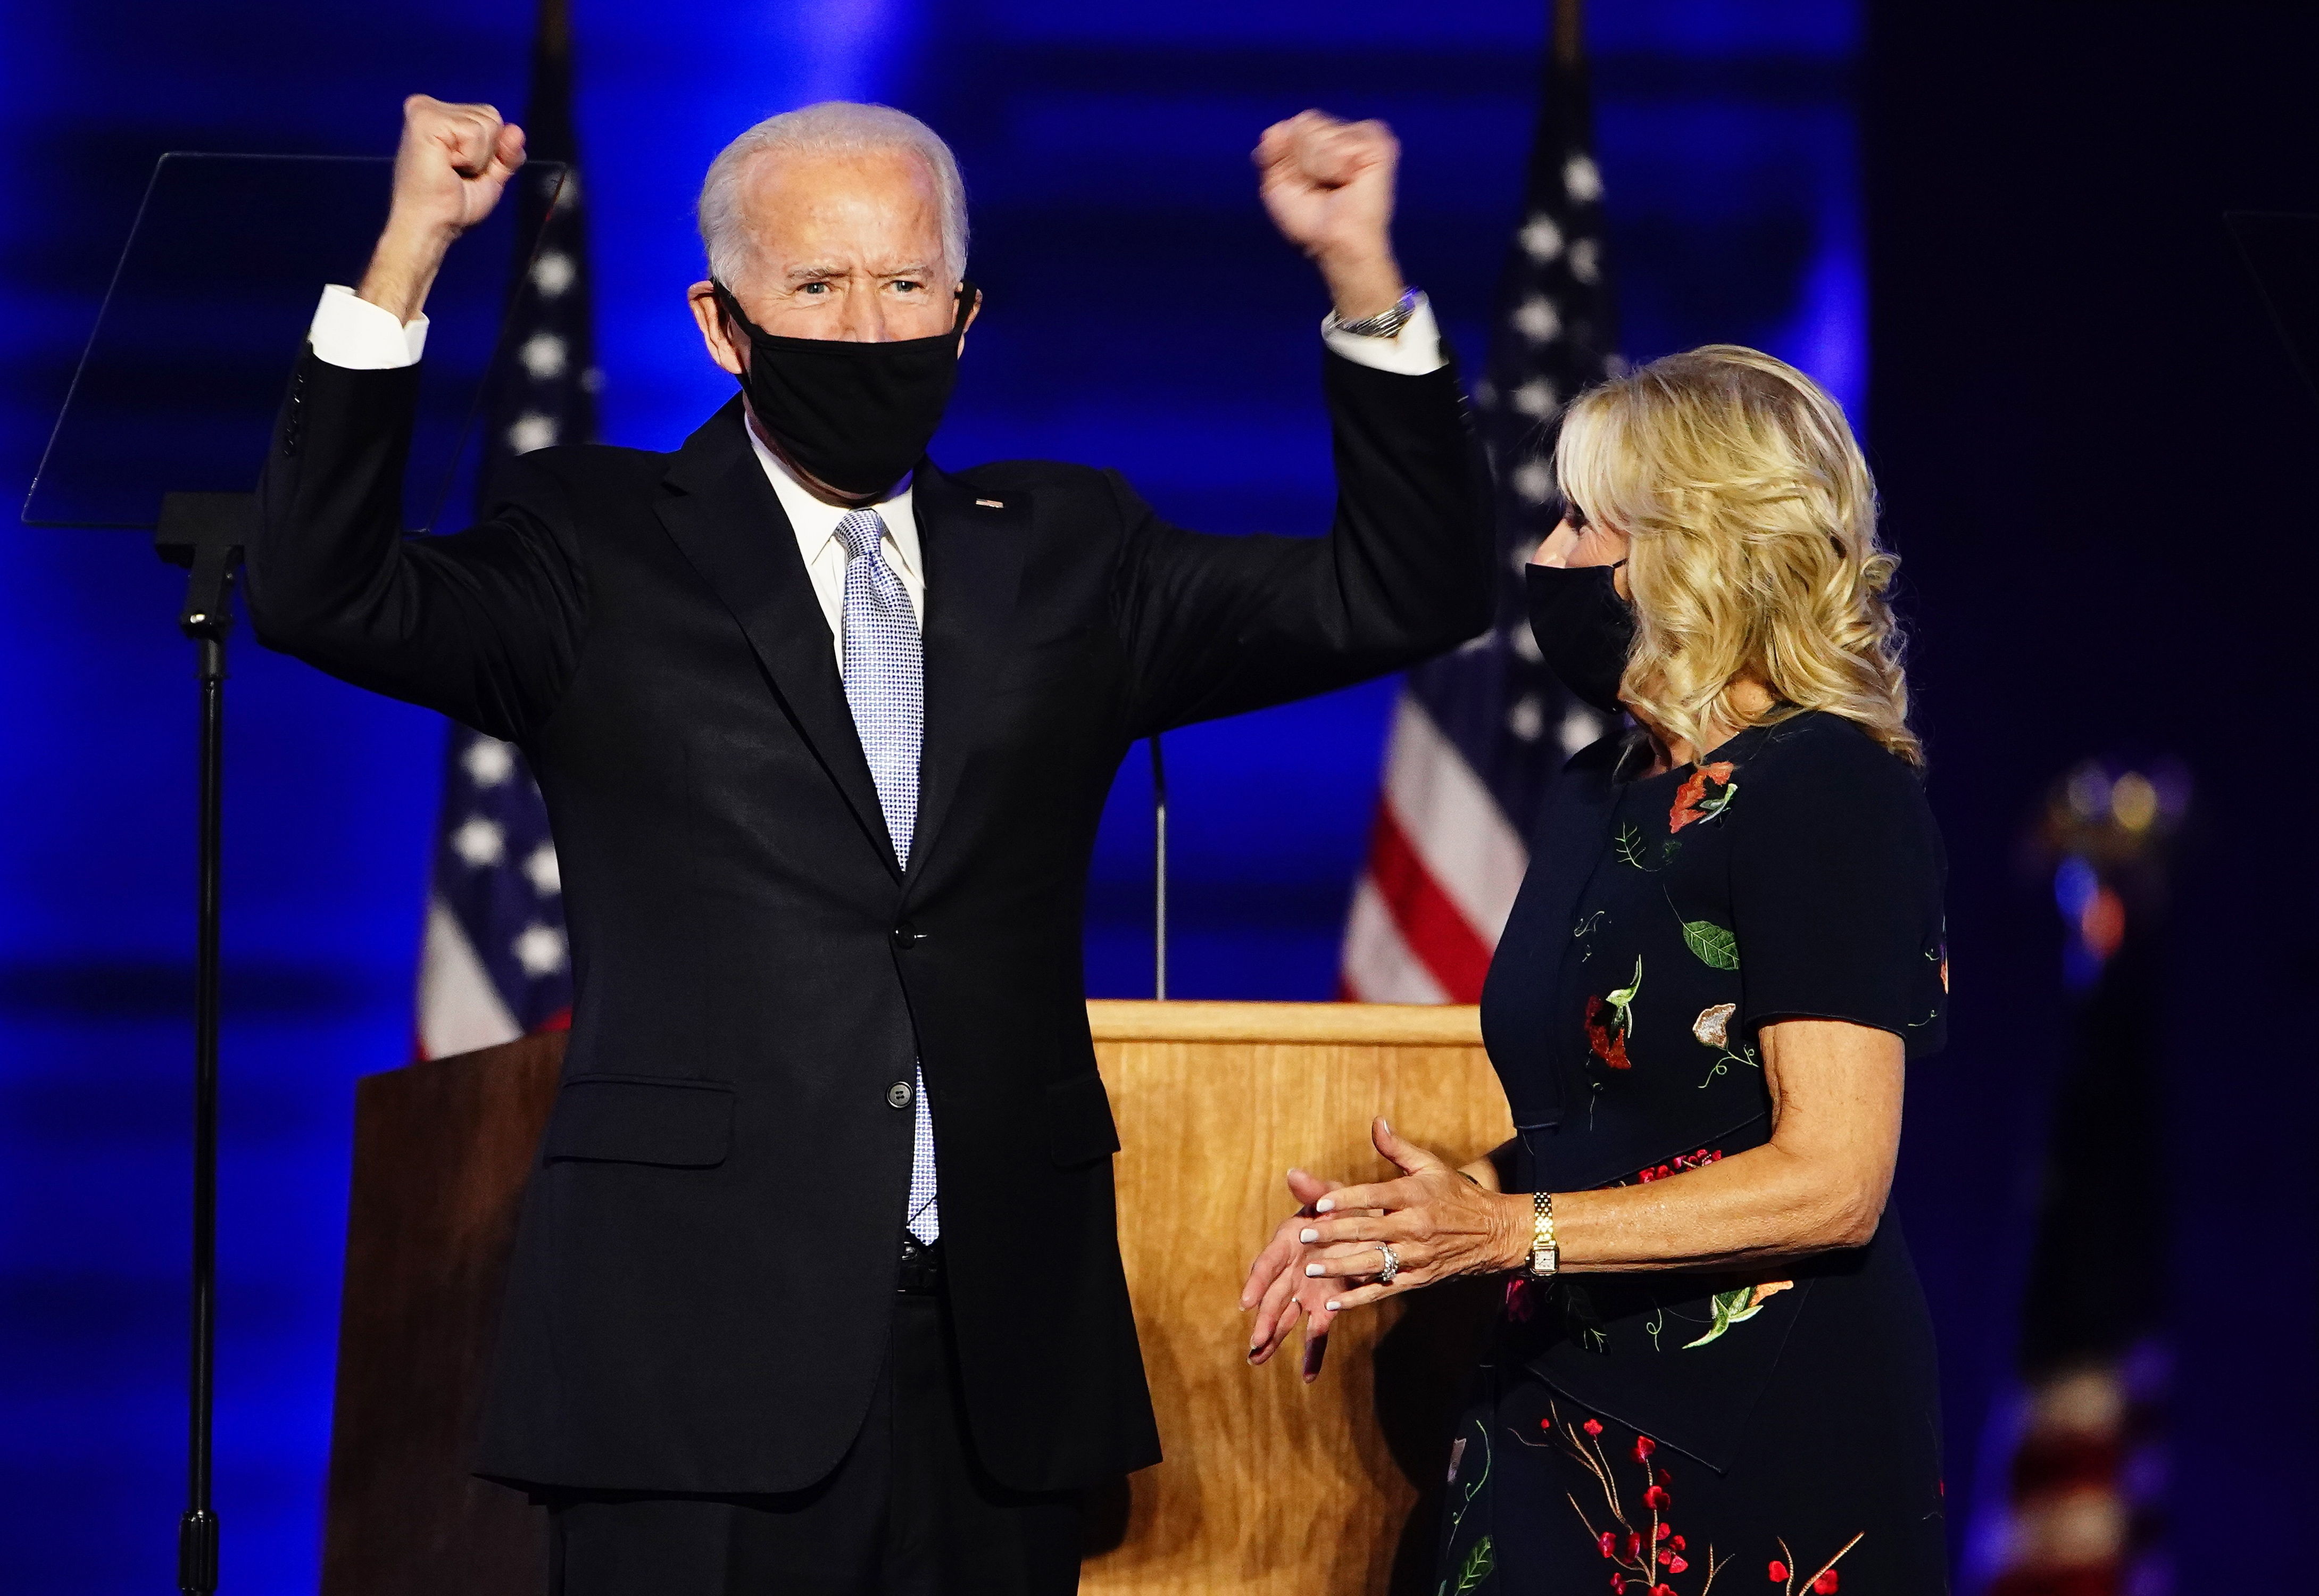 El presidente electo Joe Biden brindó un discurso pidiendo unidad. (Foto Prensa Libre: EFE)